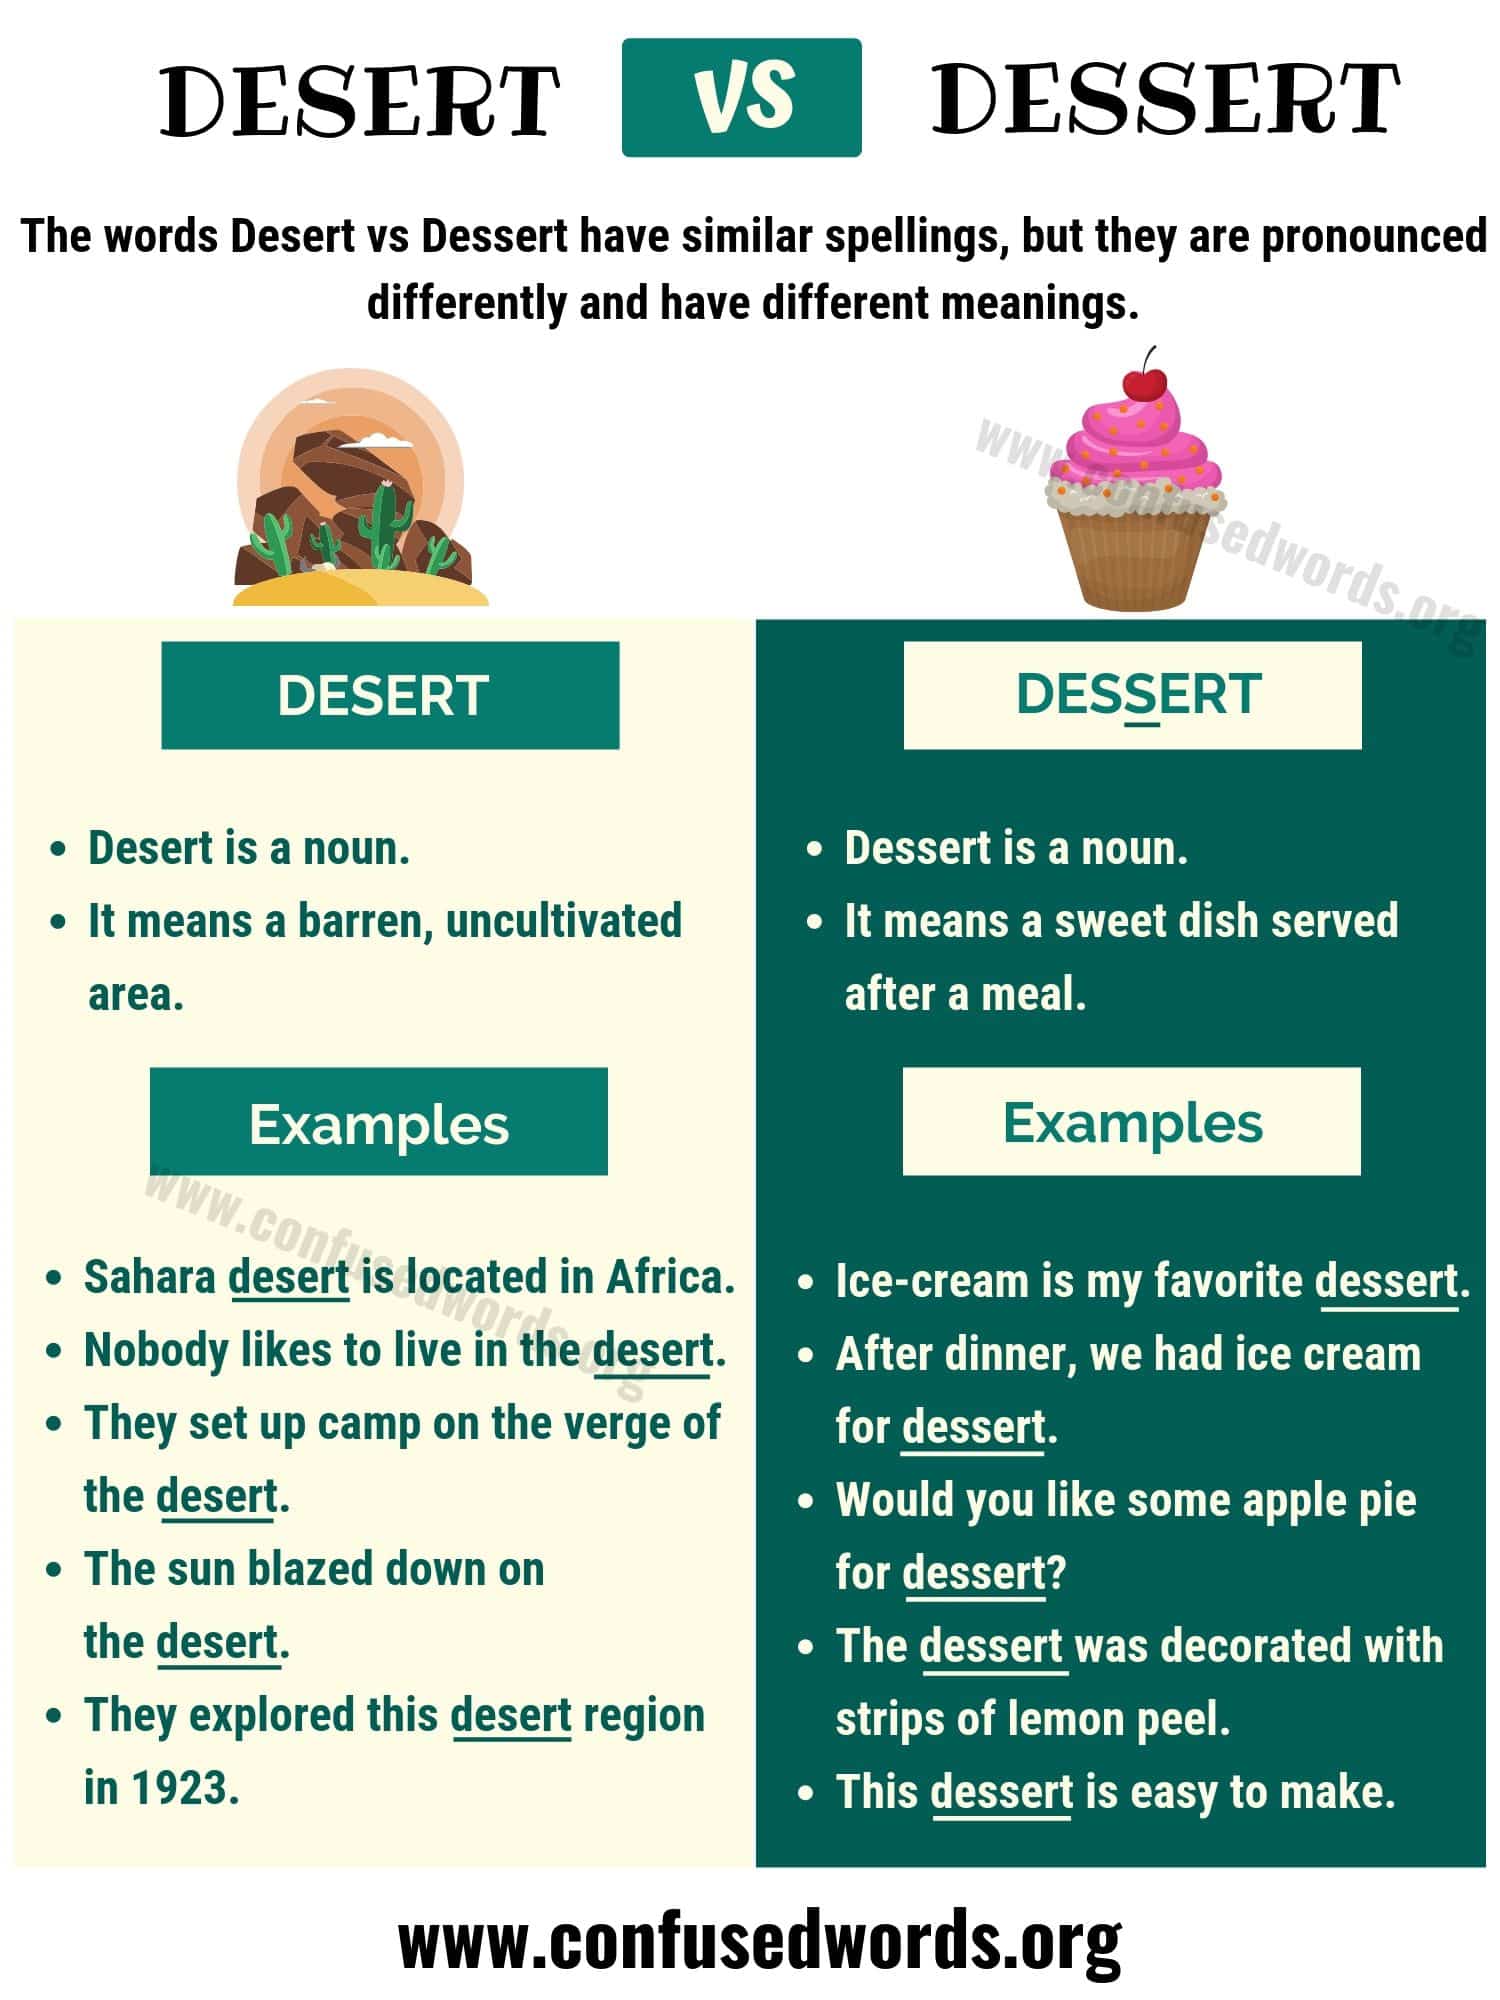 DESERT vs DESSERT